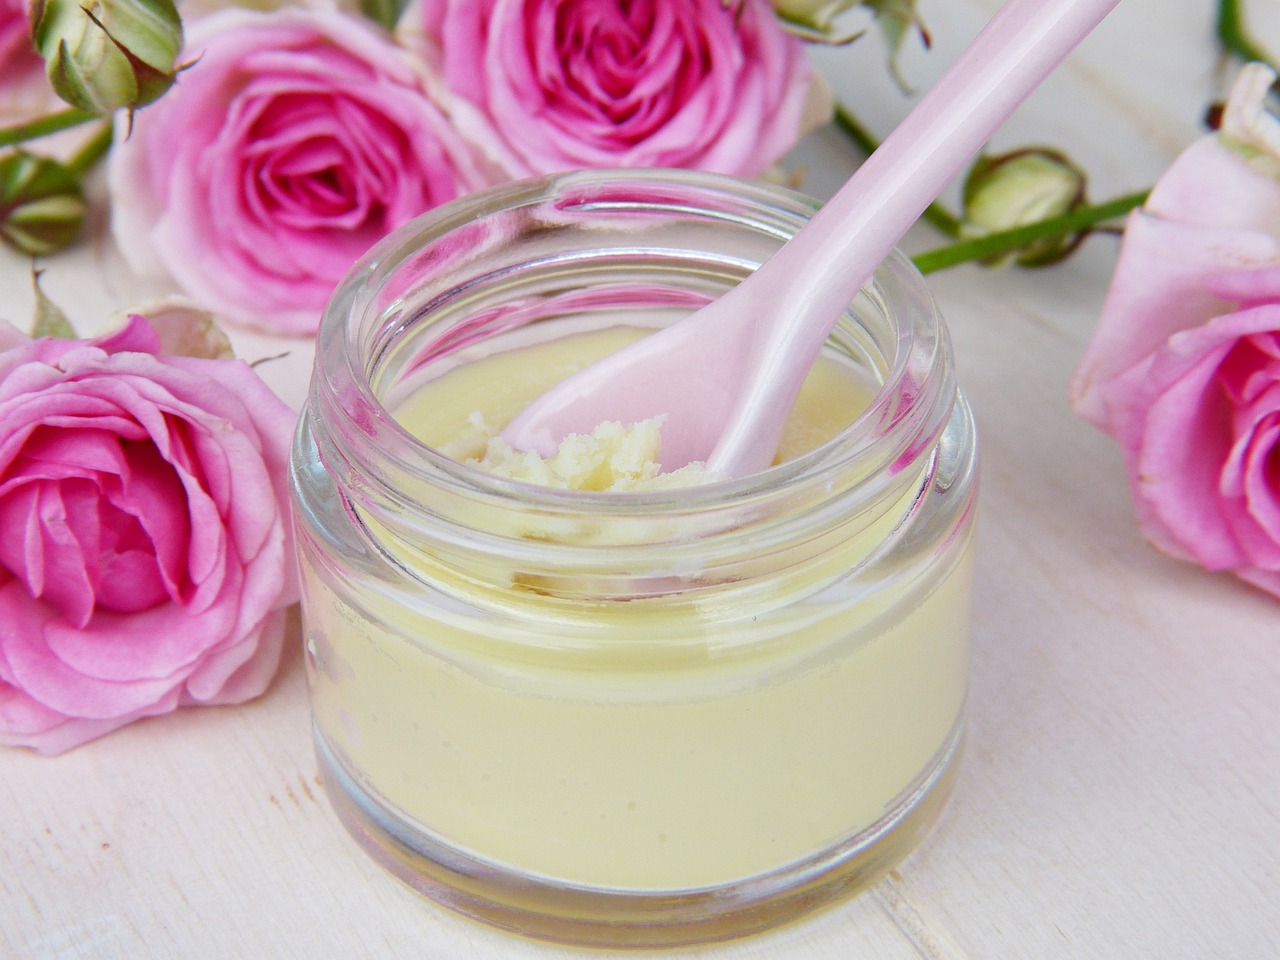 ¿Qué hace el ácido hialurónico en crema?